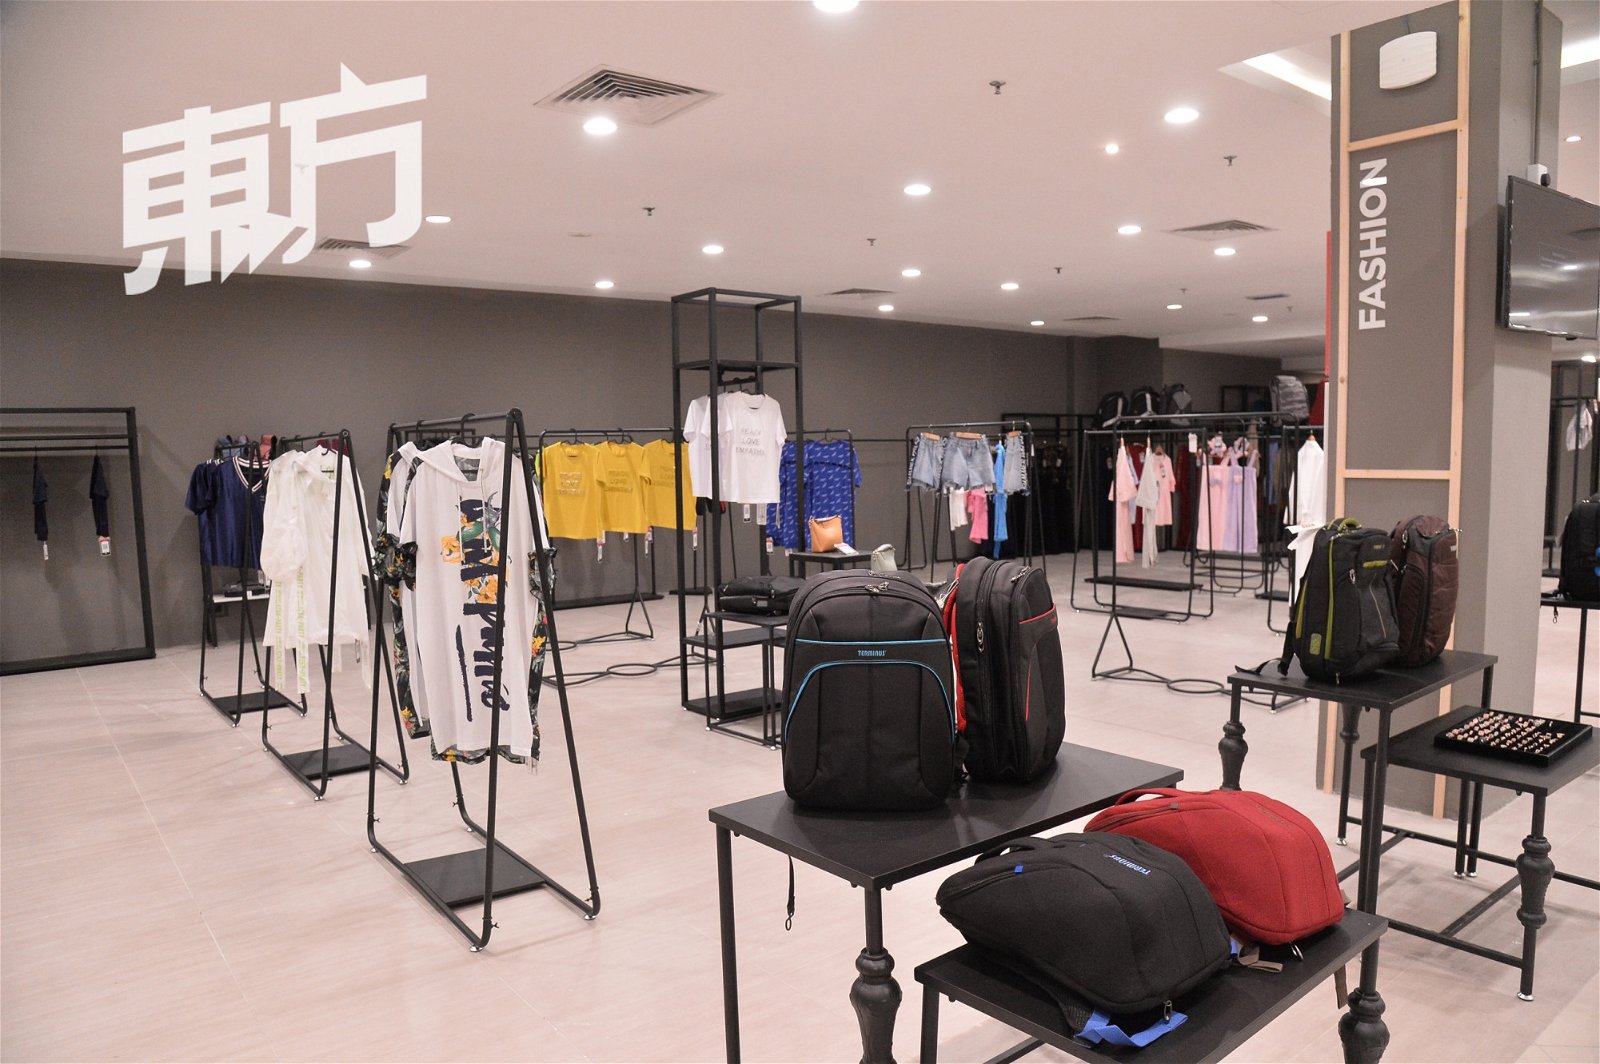 本地京东概念店是由Presto和新马智城（Smuzcity）联手打造，占地5万平方尺，商品涵盖电子产品、保健美容、家居及生活用品、服饰等等，张嘉洲也欢迎本地商家加入一起合作。